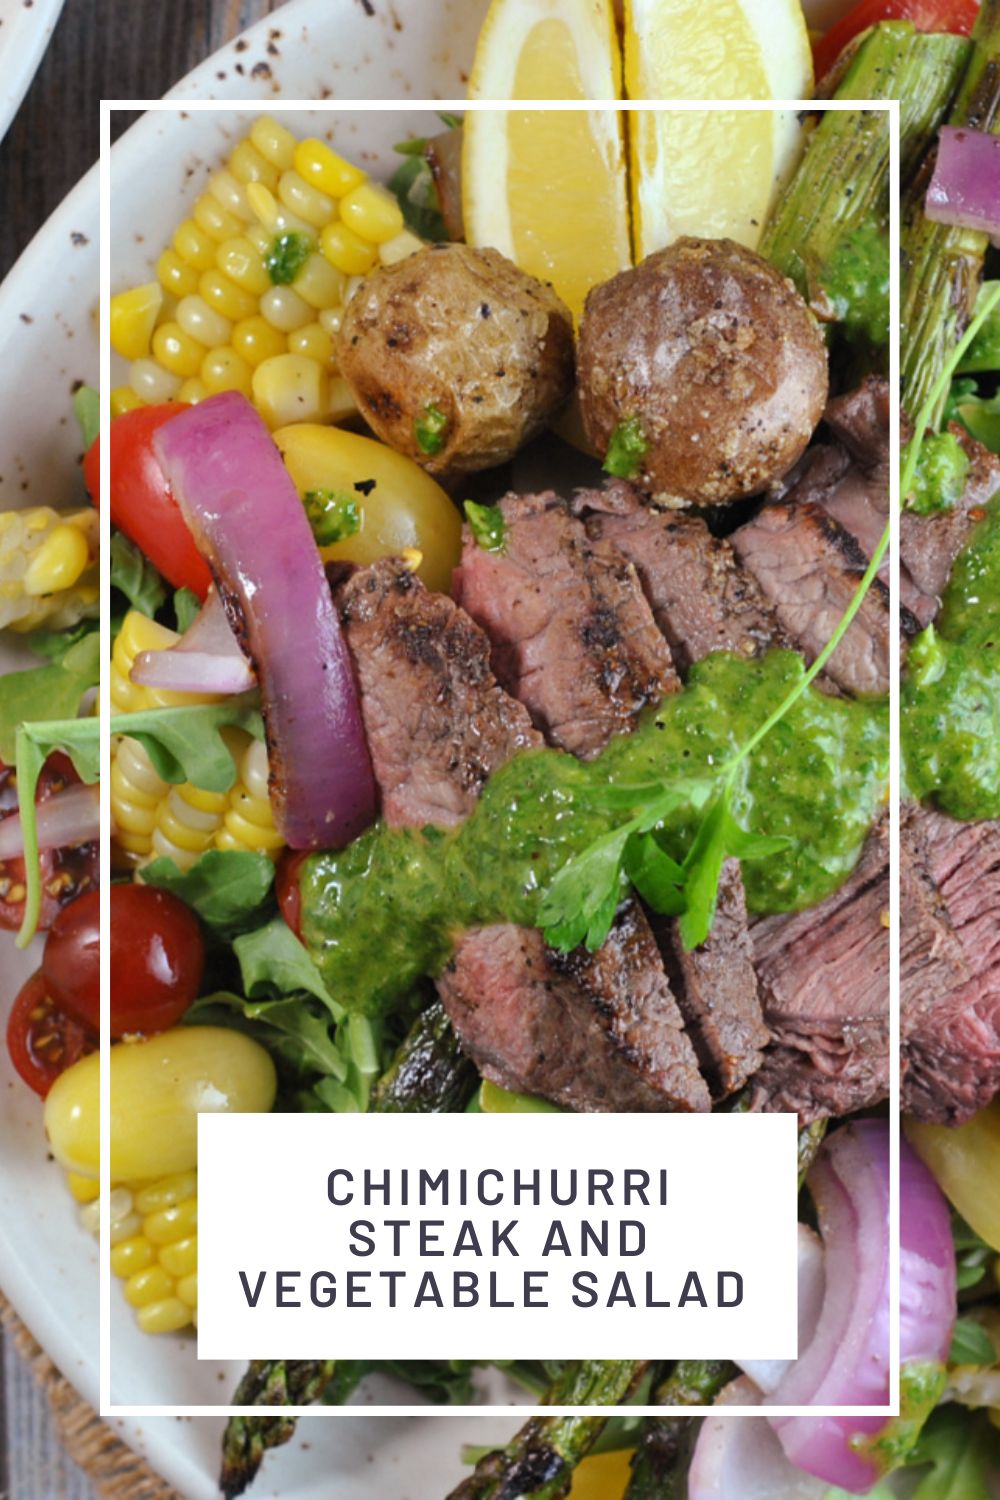 Chimichurri Steak and Vegetable Salad via @preventionrd